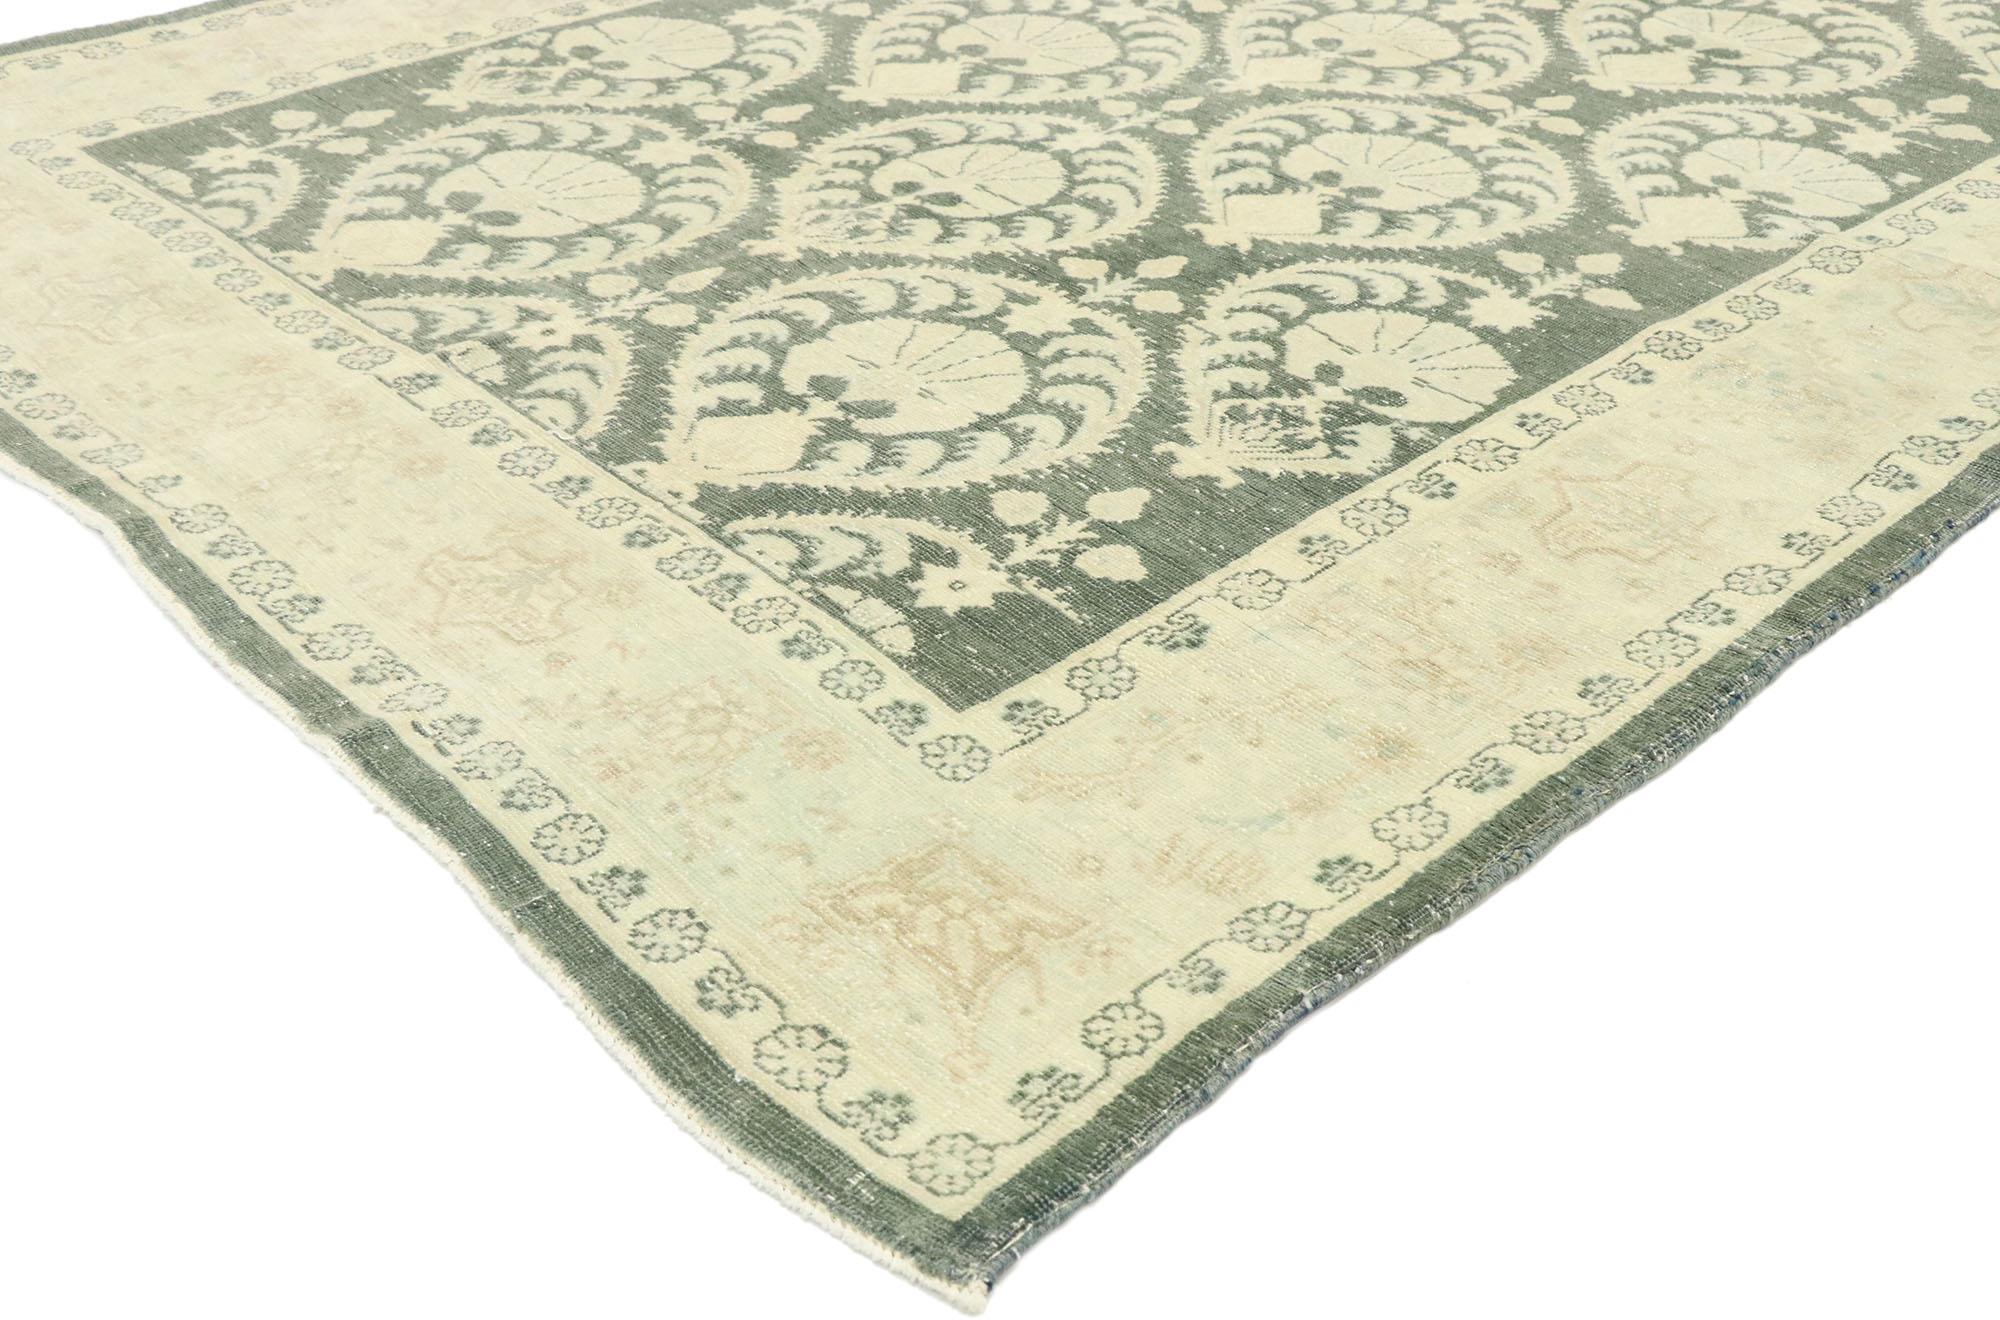 53033, strapazierter rumänischer Teppich im Vintage-Stil, inspiriert von William Morris im Arts & Crafts-Stil. Dieser handgeknüpfte rumänische Galerieteppich aus Wolle, der an das französische Design und die dekorative Eleganz des 19. Jahrhunderts